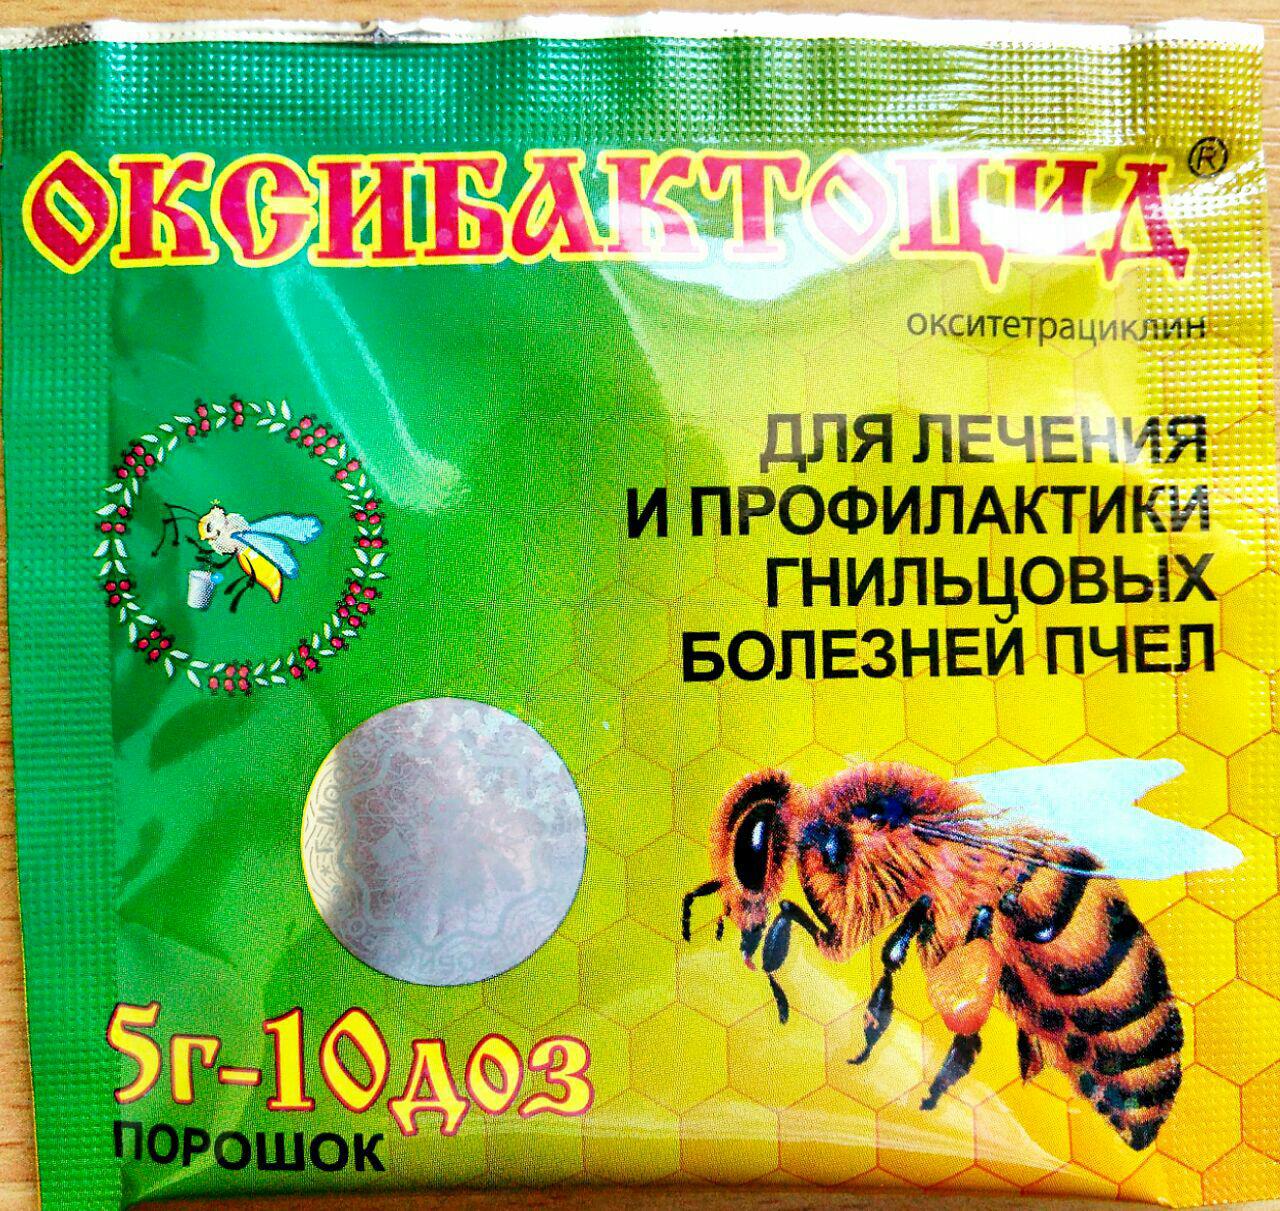 Интернет магазин пчеловода москва. Оксибактоцид (порошок). Оксибактоцид (порошок, 5 гр). Оксибактоцид для пчел. Агробиопром препараты для пчел.